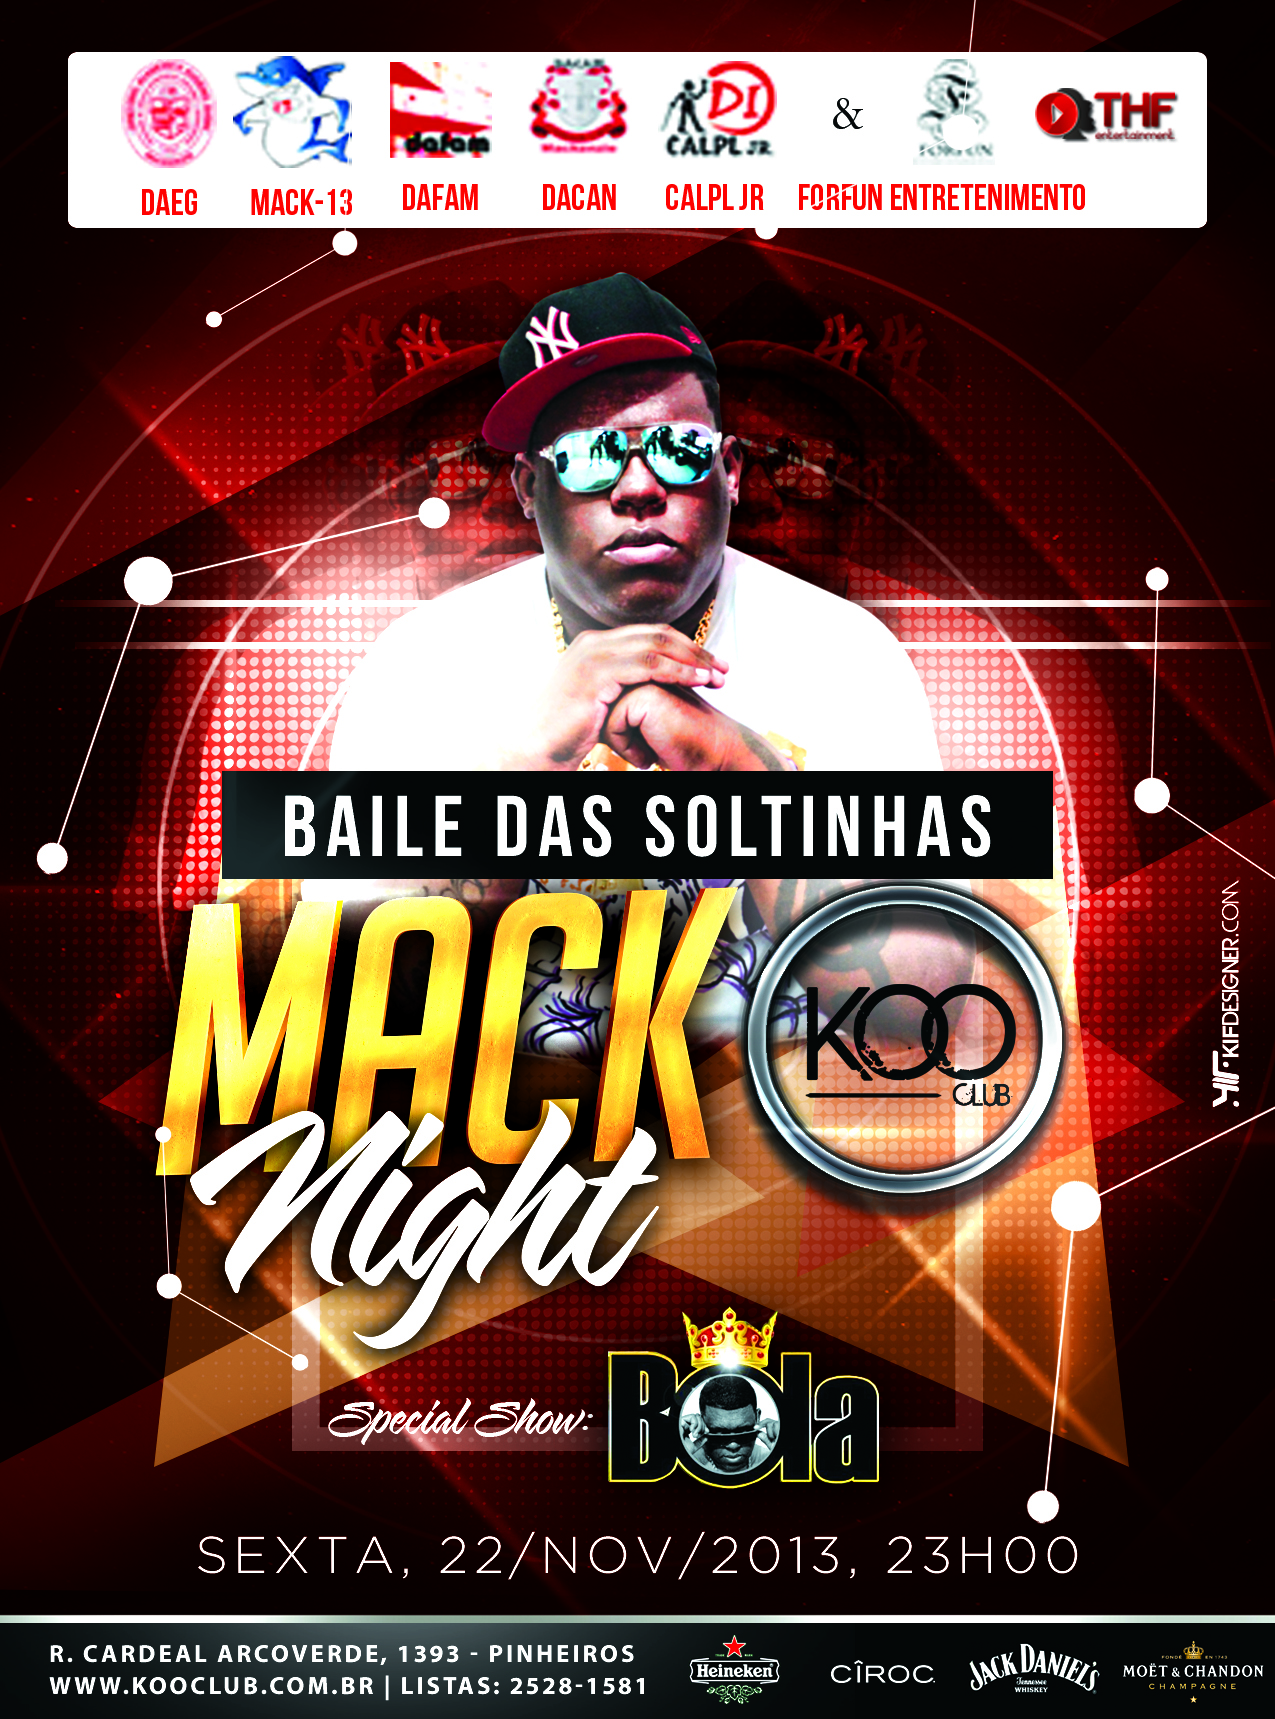 MackNight com Baile das Soltinhas agita a noite de sexta-feira da Koo Club Eventos BaresSP 570x300 imagem